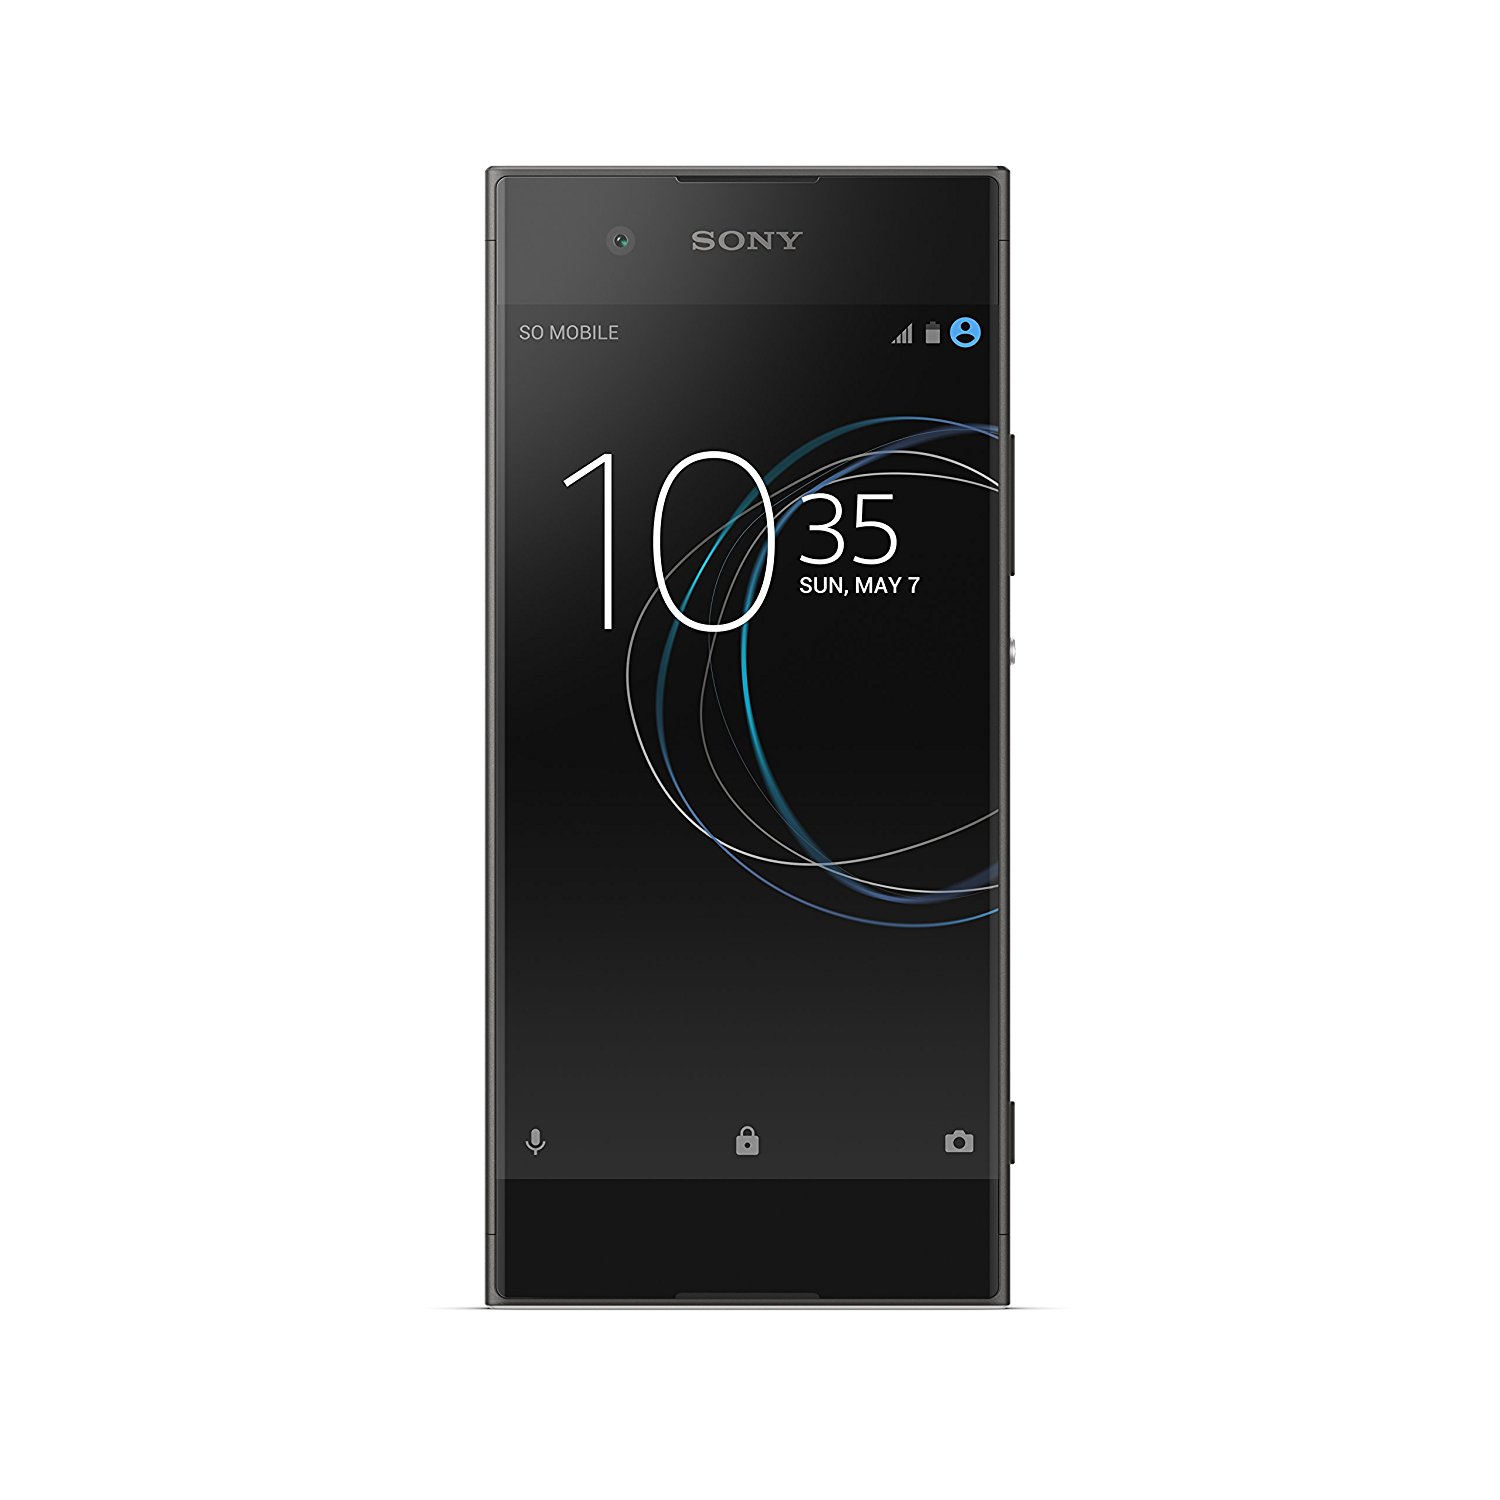 Sony Computer Entertainment Sony Xperia XA1 - разблокированный смартфон - 32 ГБ - черный (гарантия США)